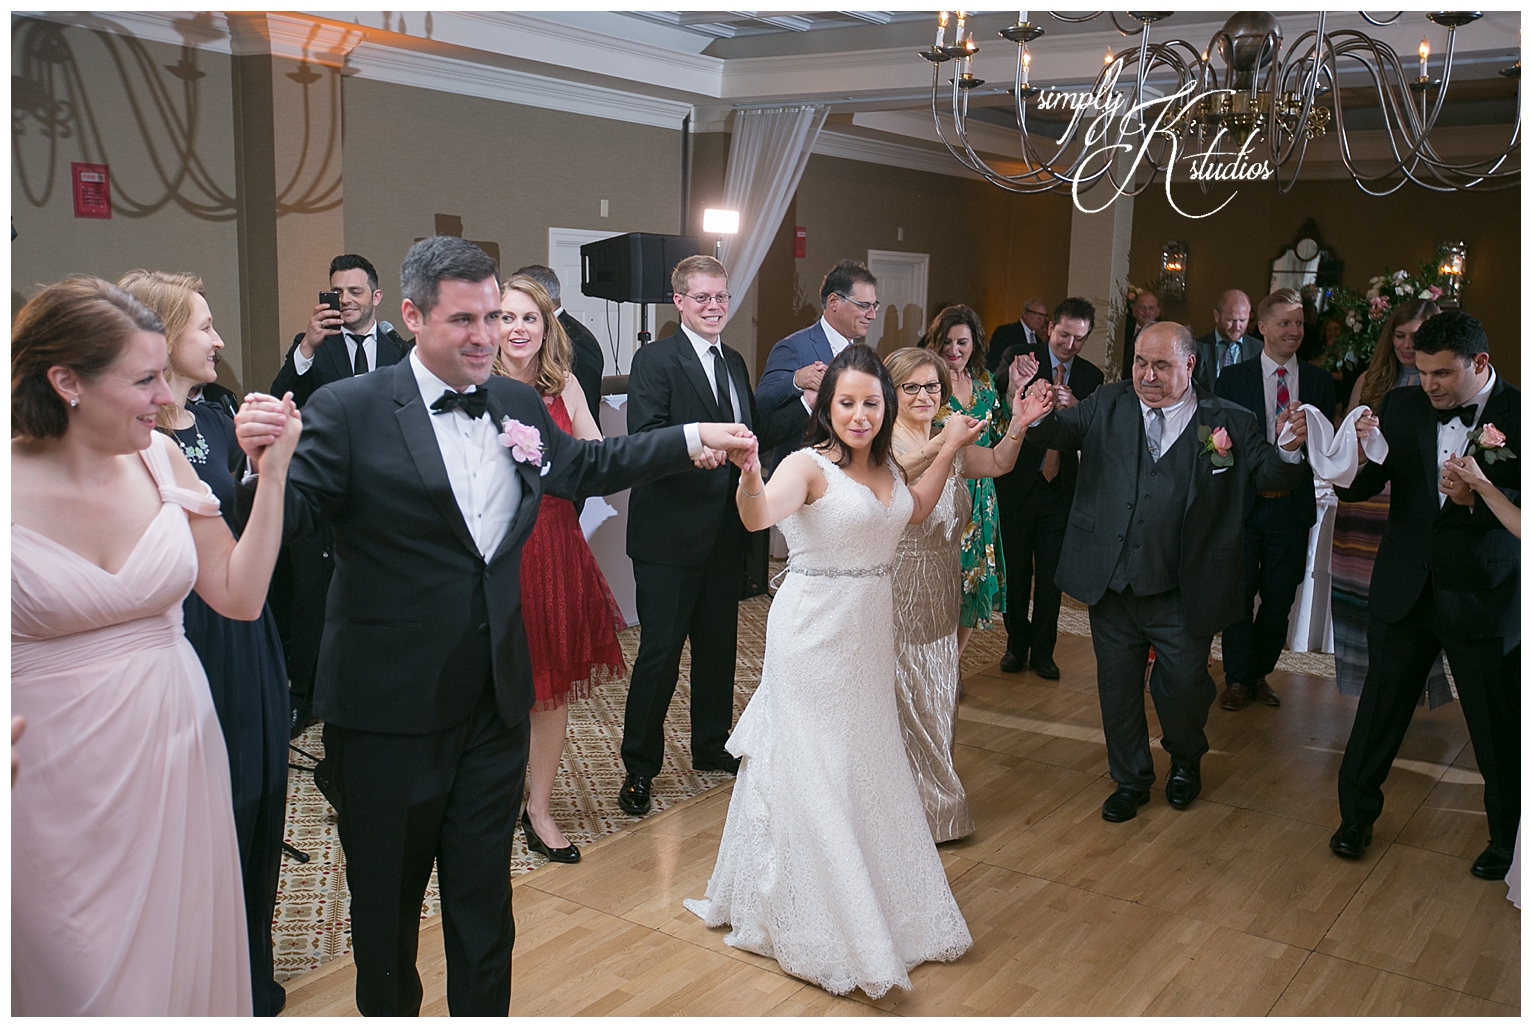 Greek Dancing at a Wedding Reception.jpg